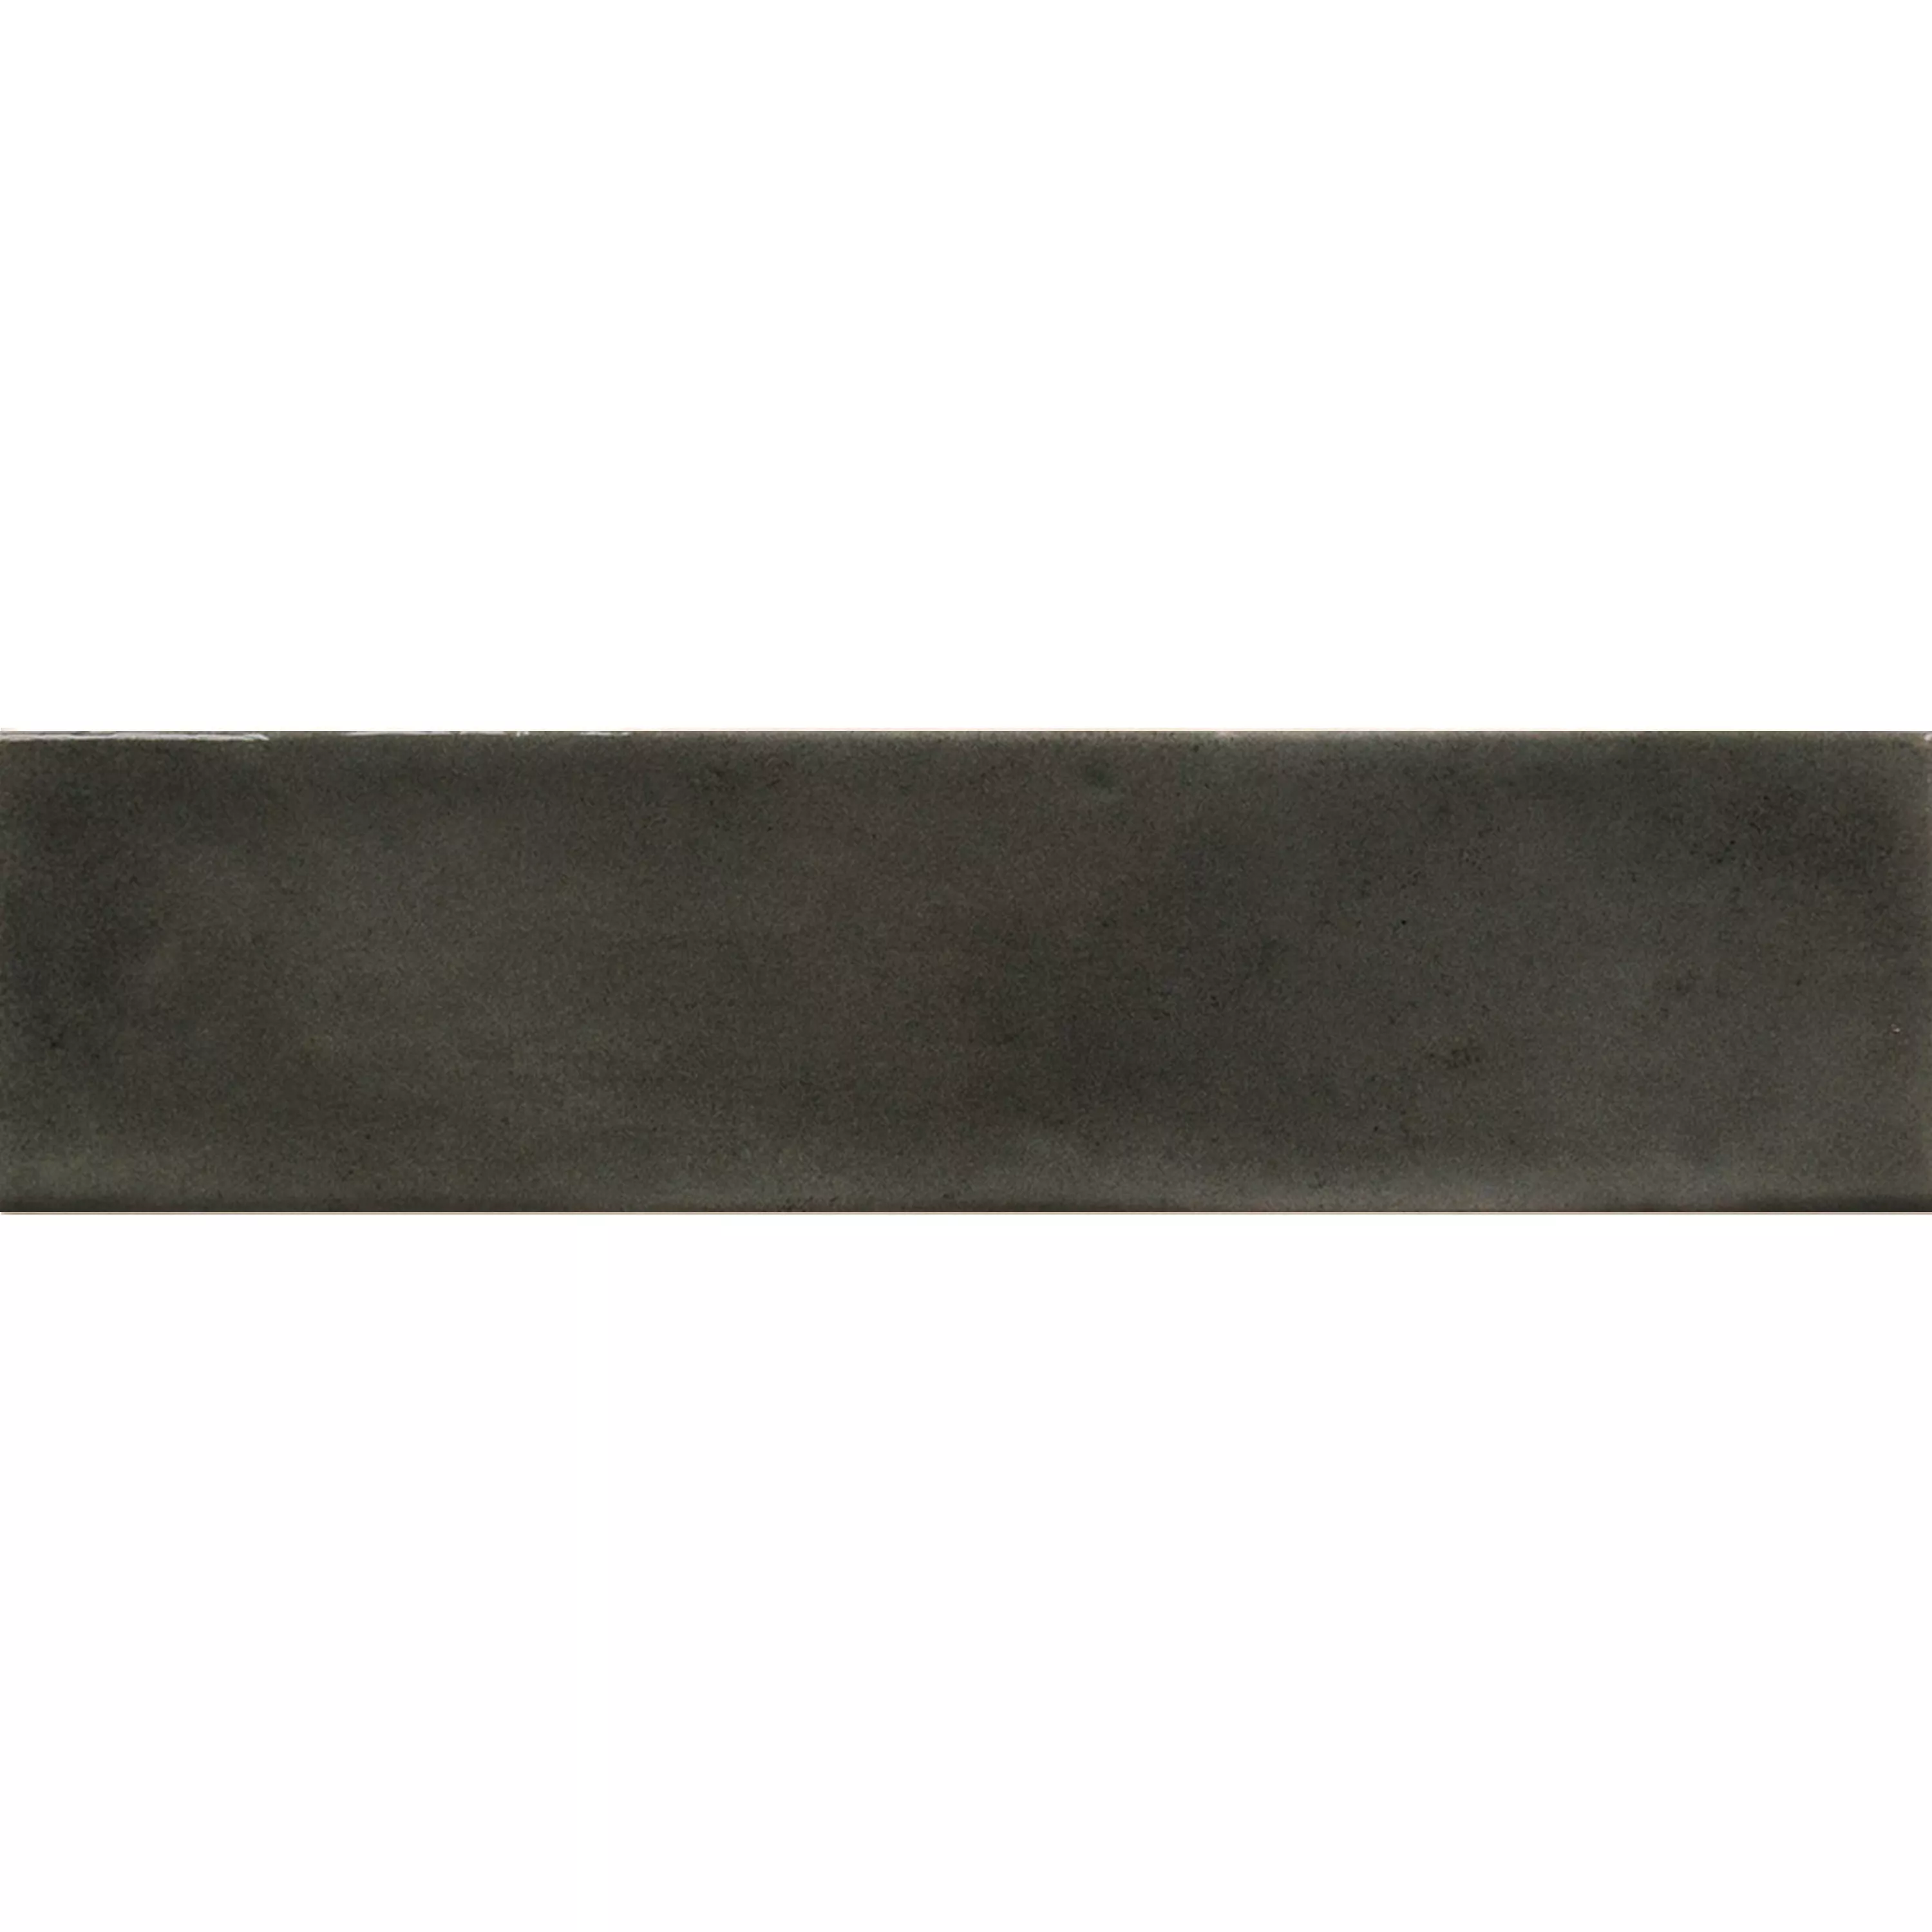 Próbka Płytki Ścienne Conway Karbowany 7,5x30cm Czarny